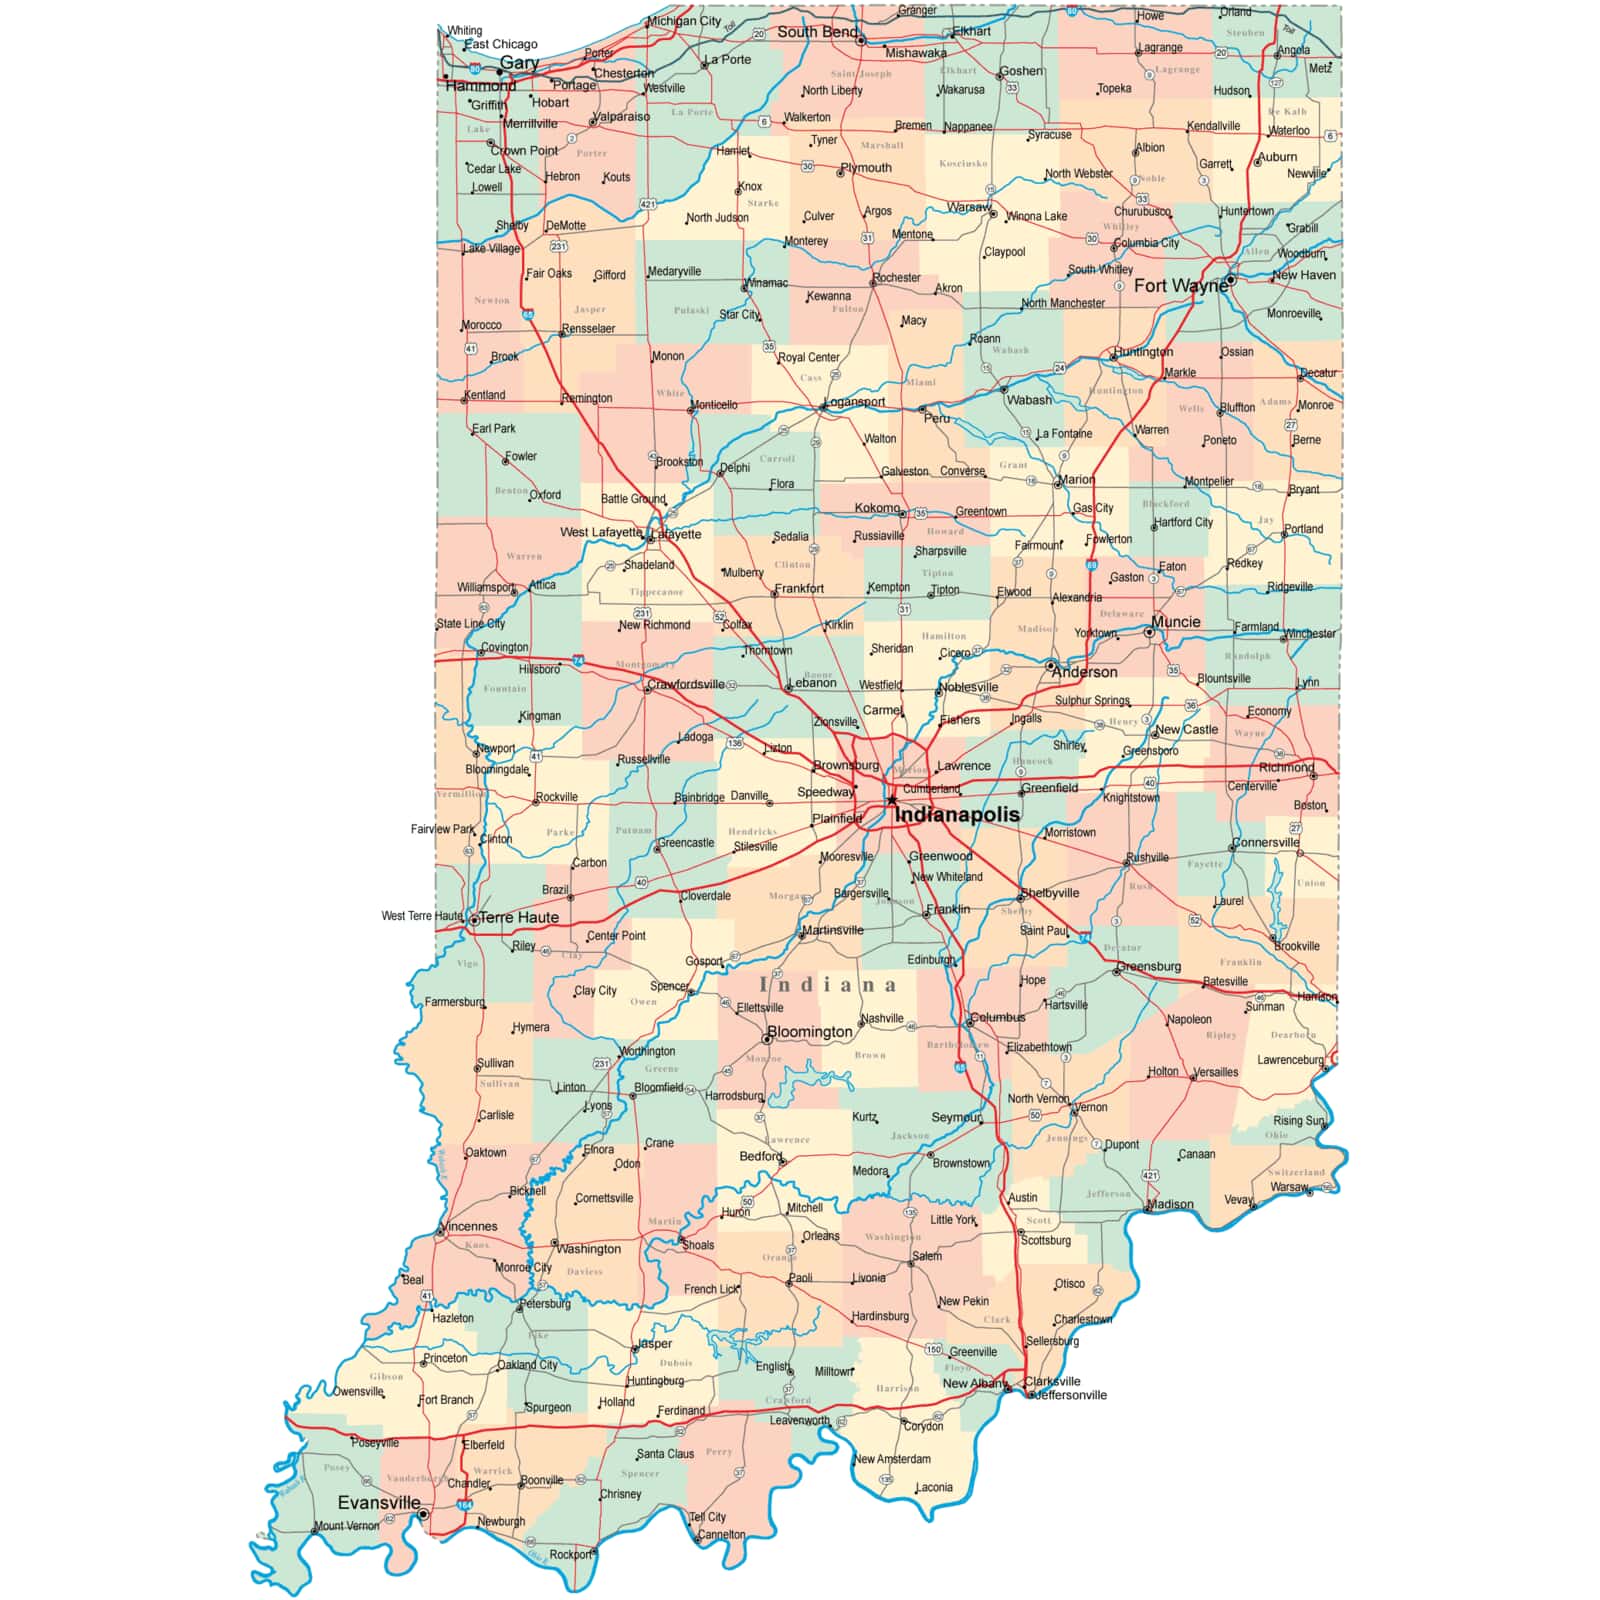 Indiana Road Map 2020 Indiana Road Map - In Road Map - Indiana Highway Map